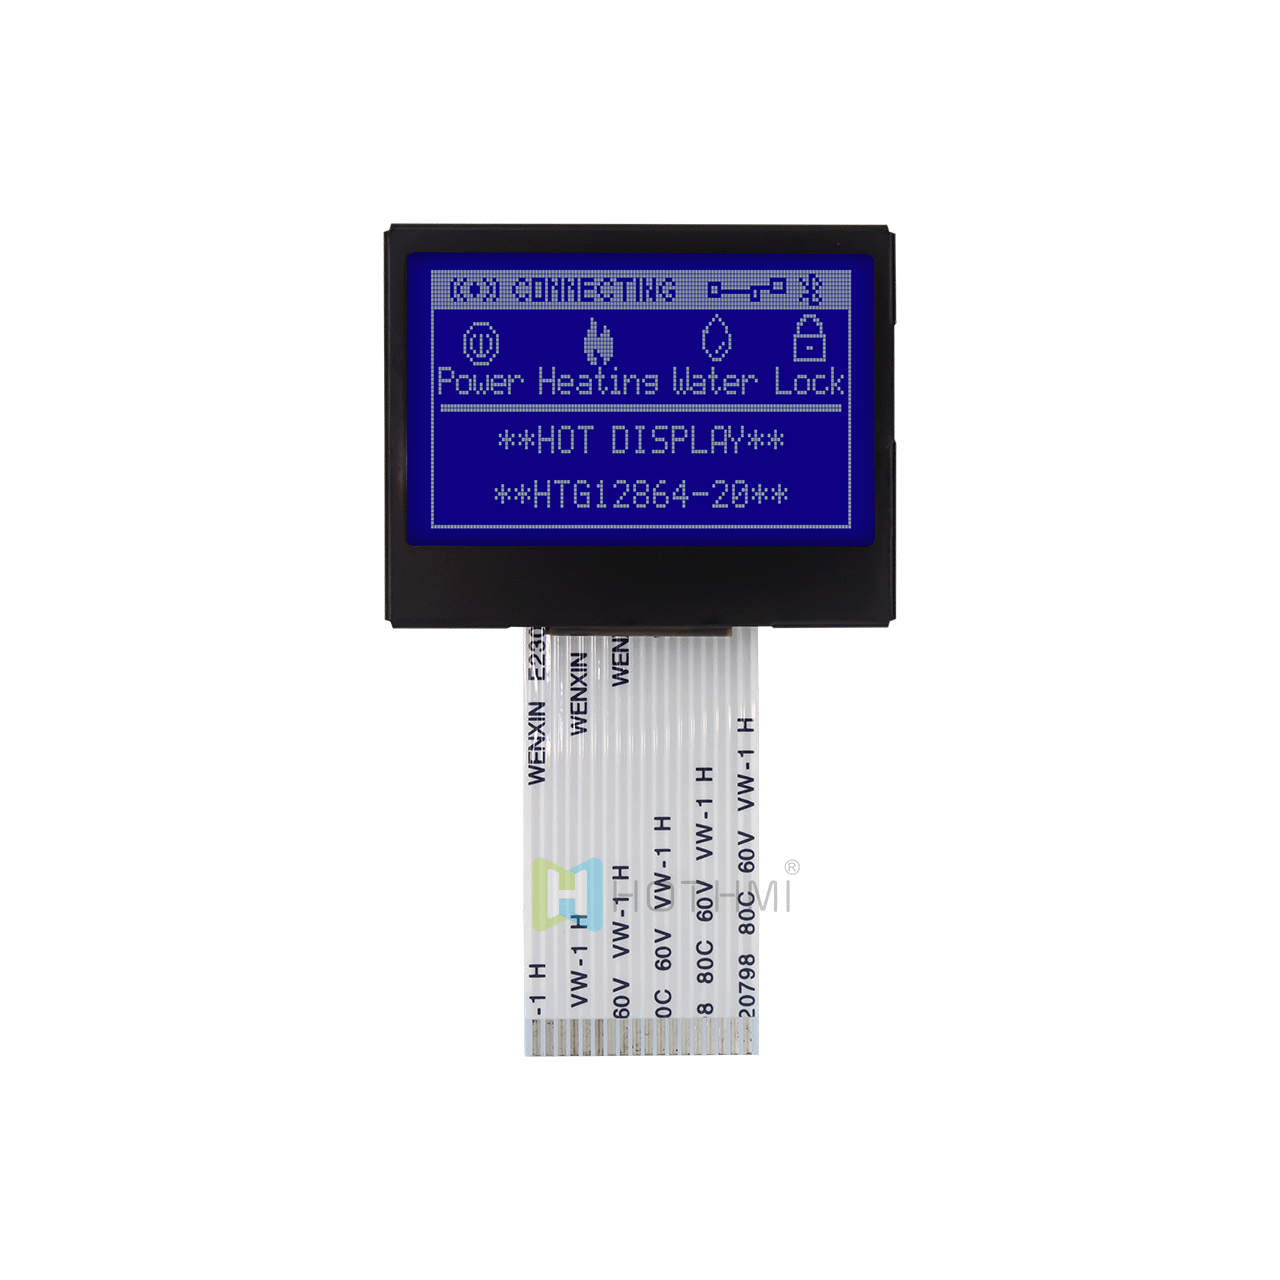 1.7英寸图形点阵模块/128x64分辨率/蓝底白字/ST7565R控制芯片/MCU